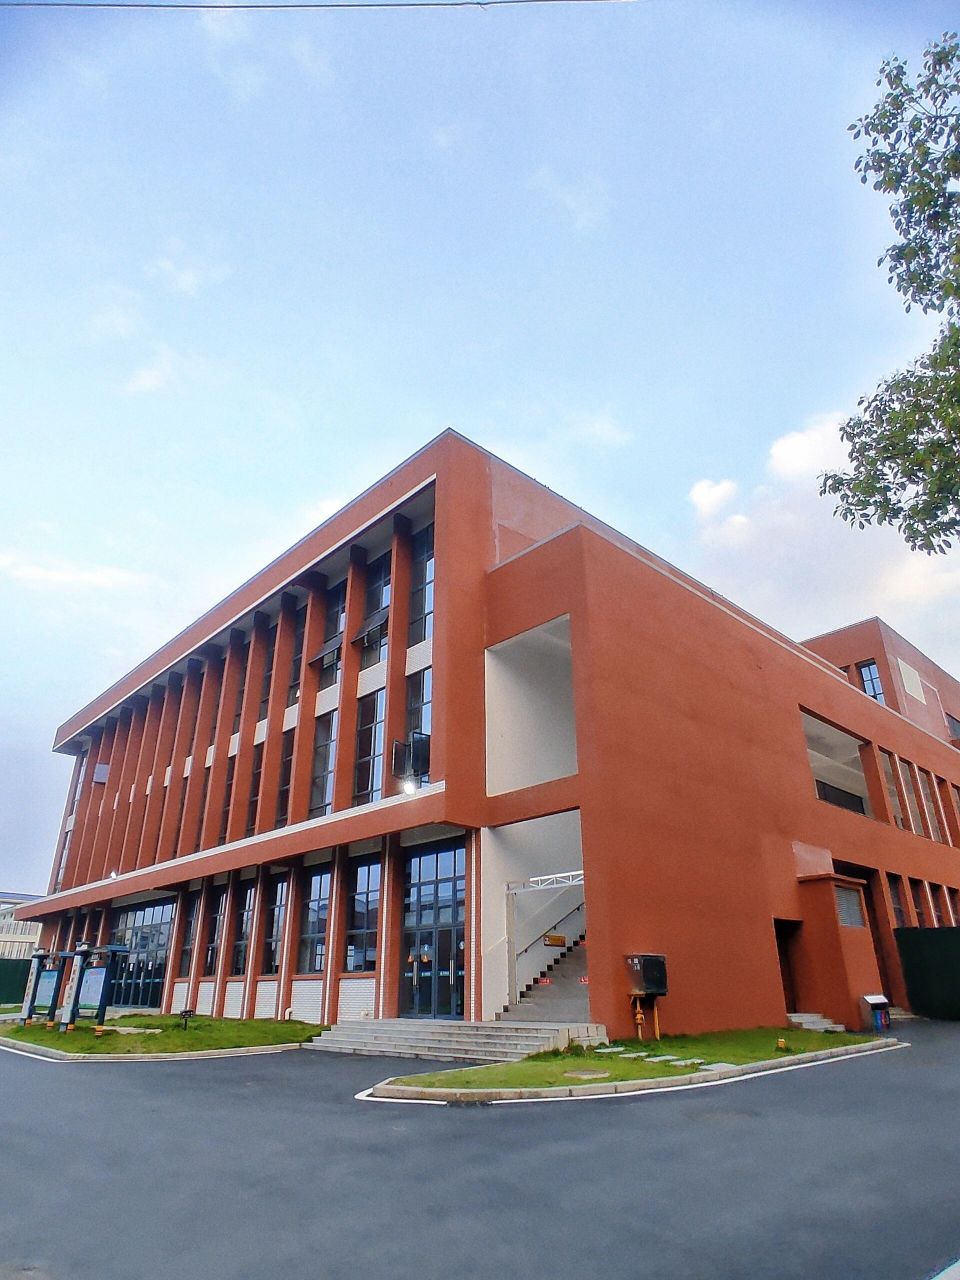 江西水利工程技师学院 学校特点: ①,学院创办于1978年,学院隶属于